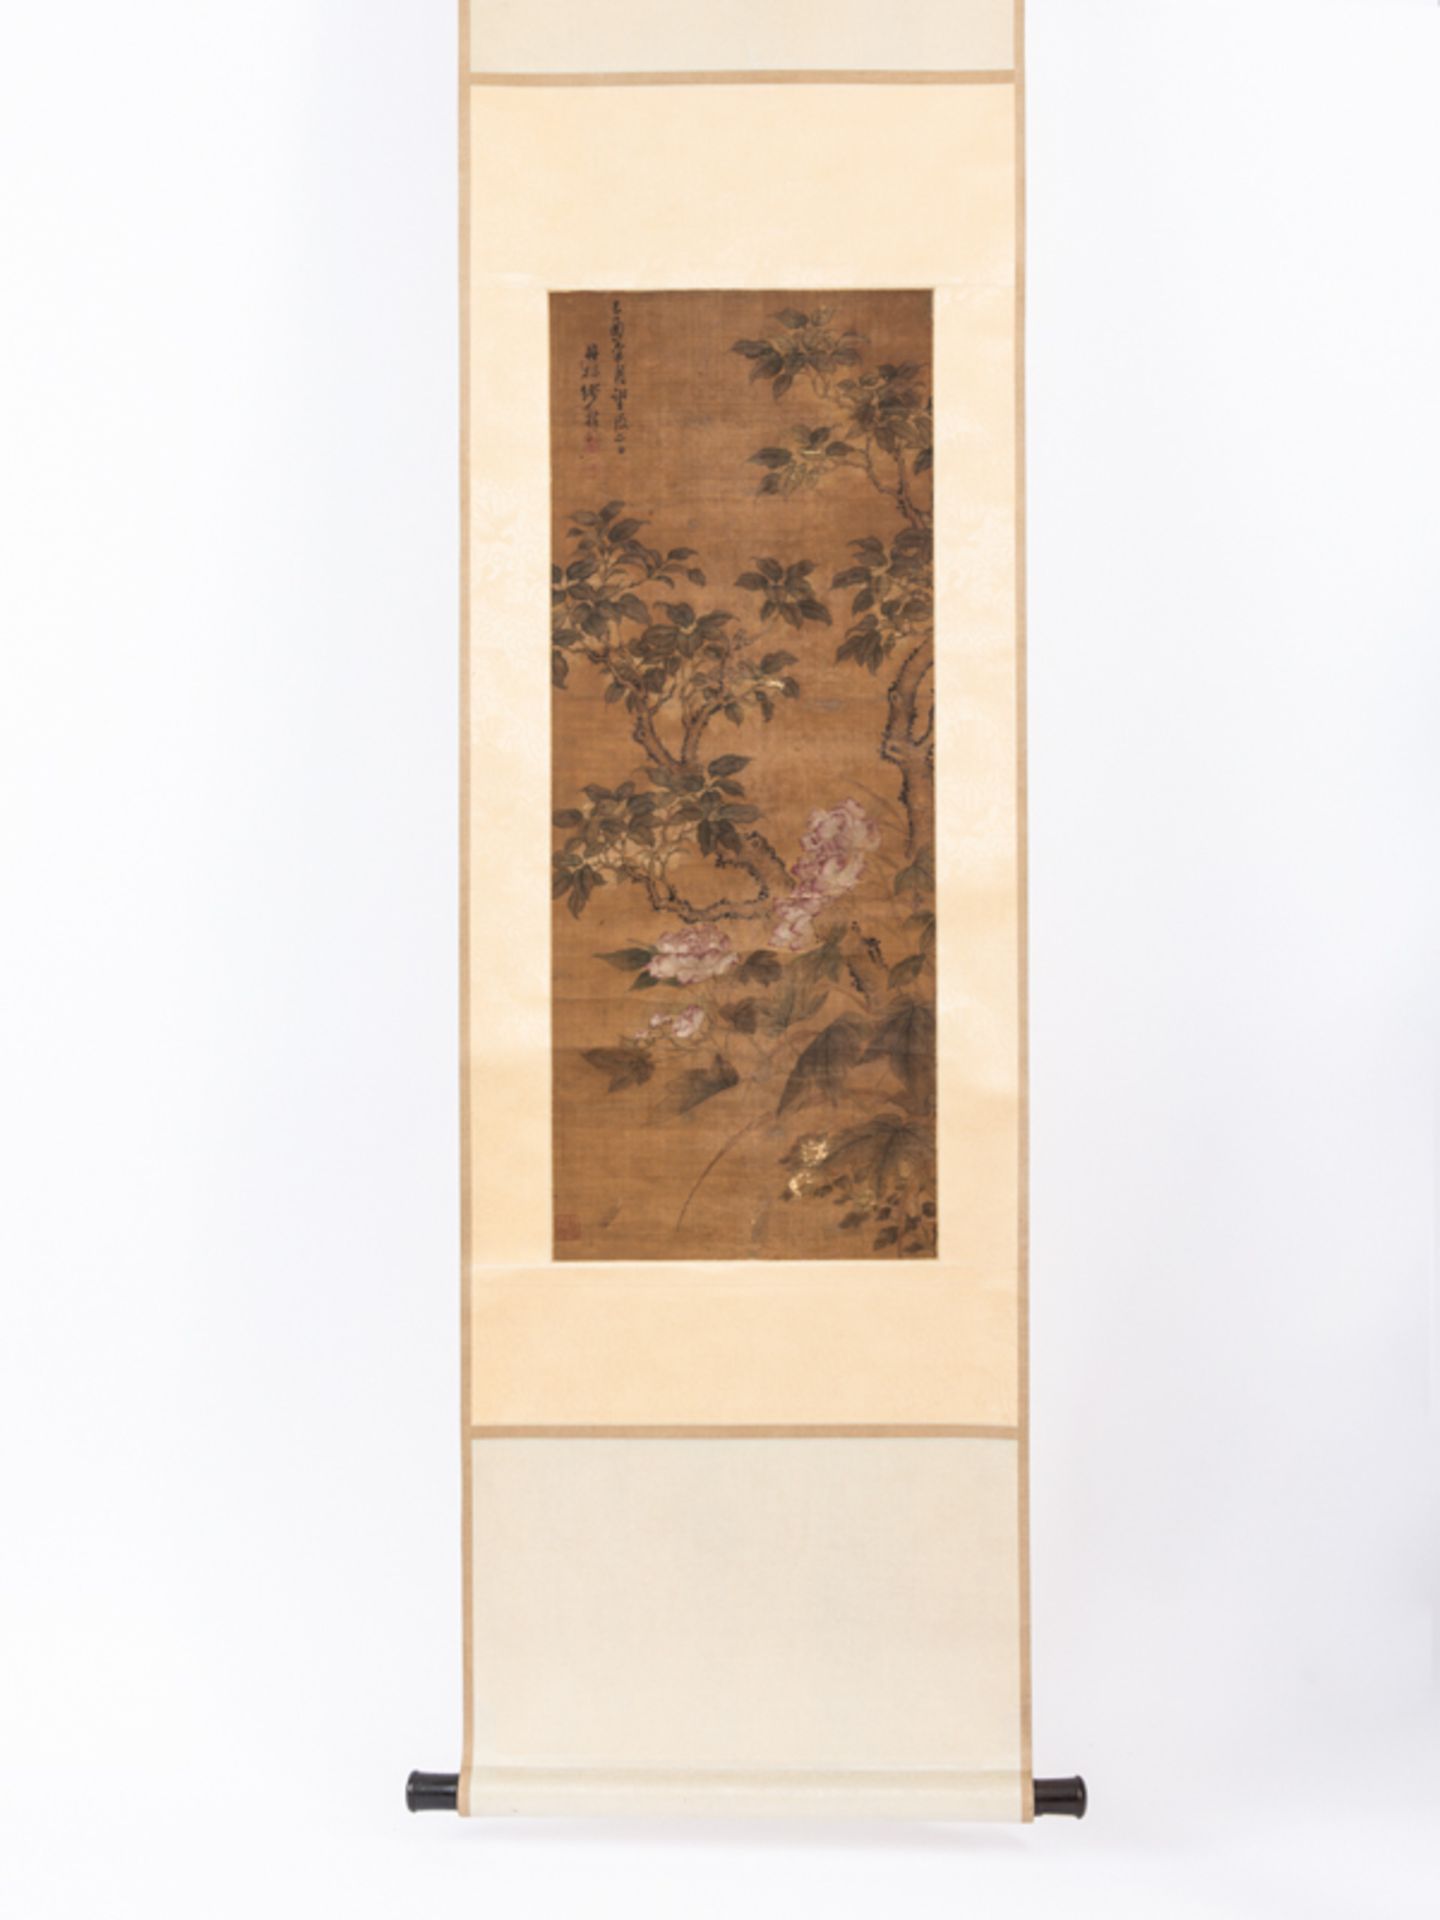 Rollbild "Päonienblüten und Geäst mit Blattwerk"; wohl Japan; 19. Jh.Farbige Tusche auf Seide;